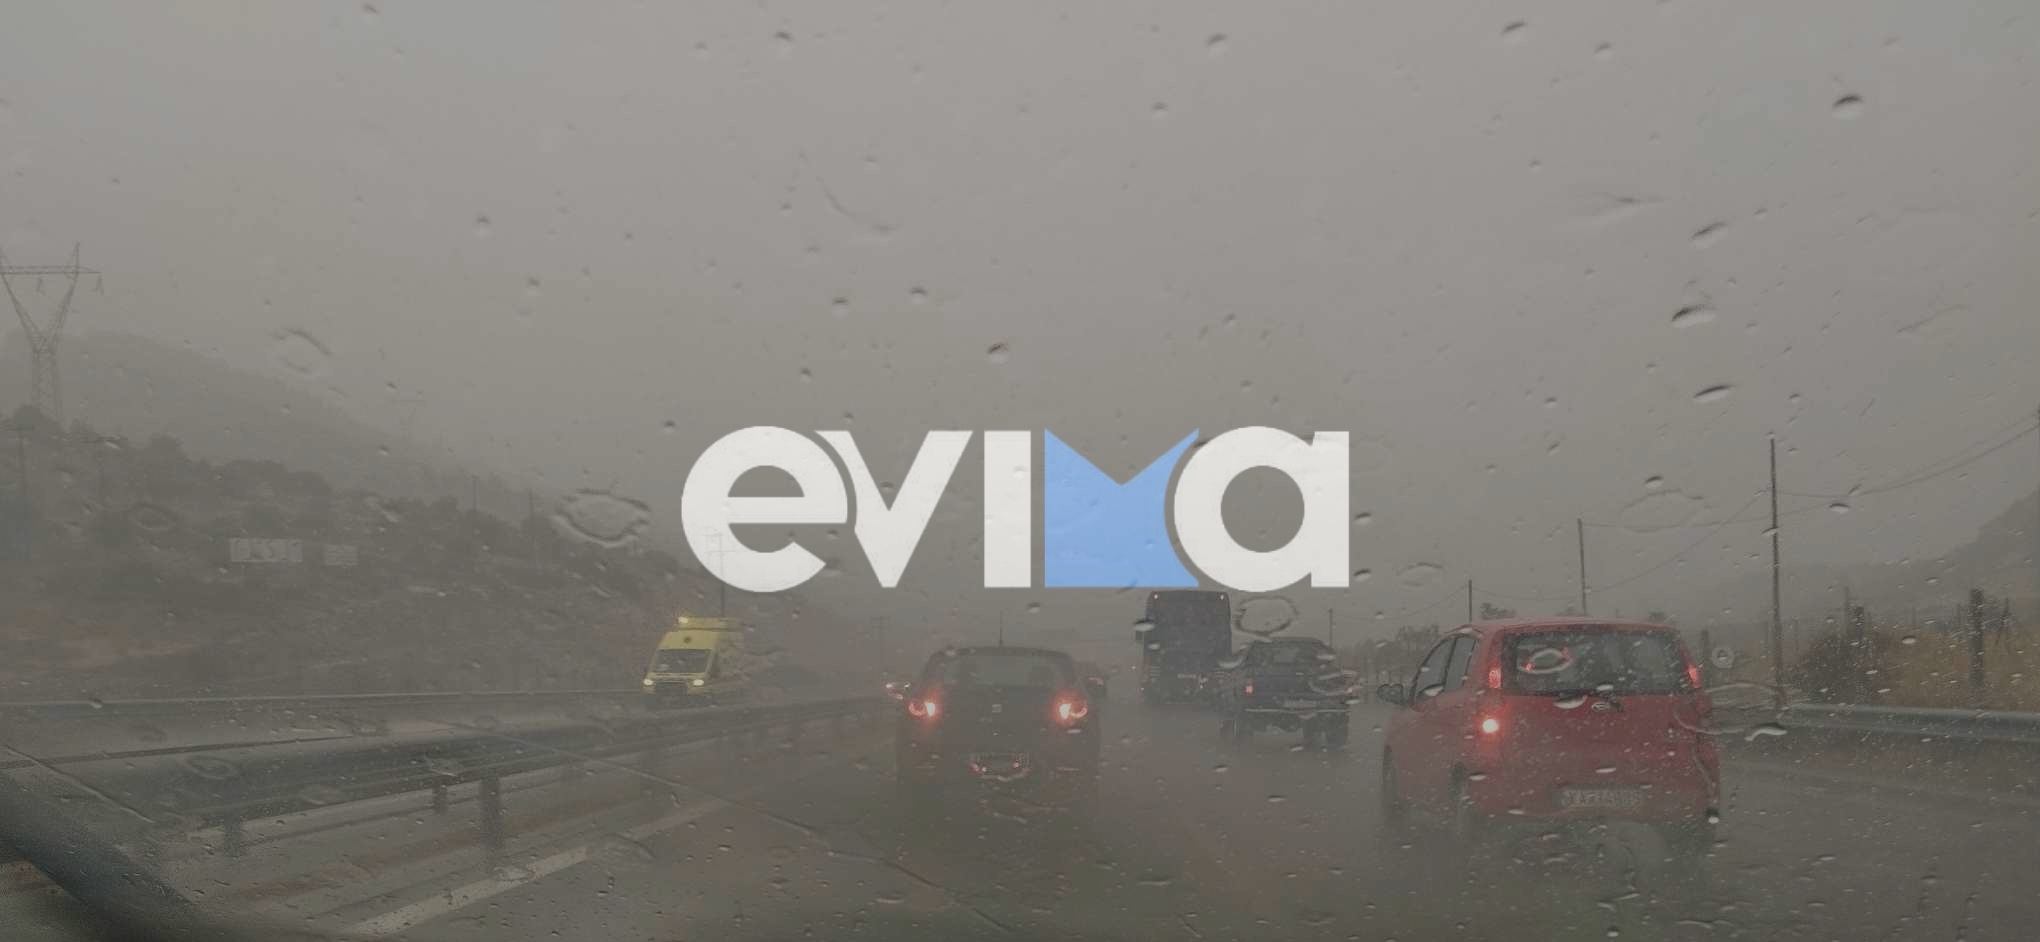 Κακοκαιρία: Επικίνδυνη καταιγίδα τώρα στην Εύβοια – Μεγάλη προσοχή (vid)